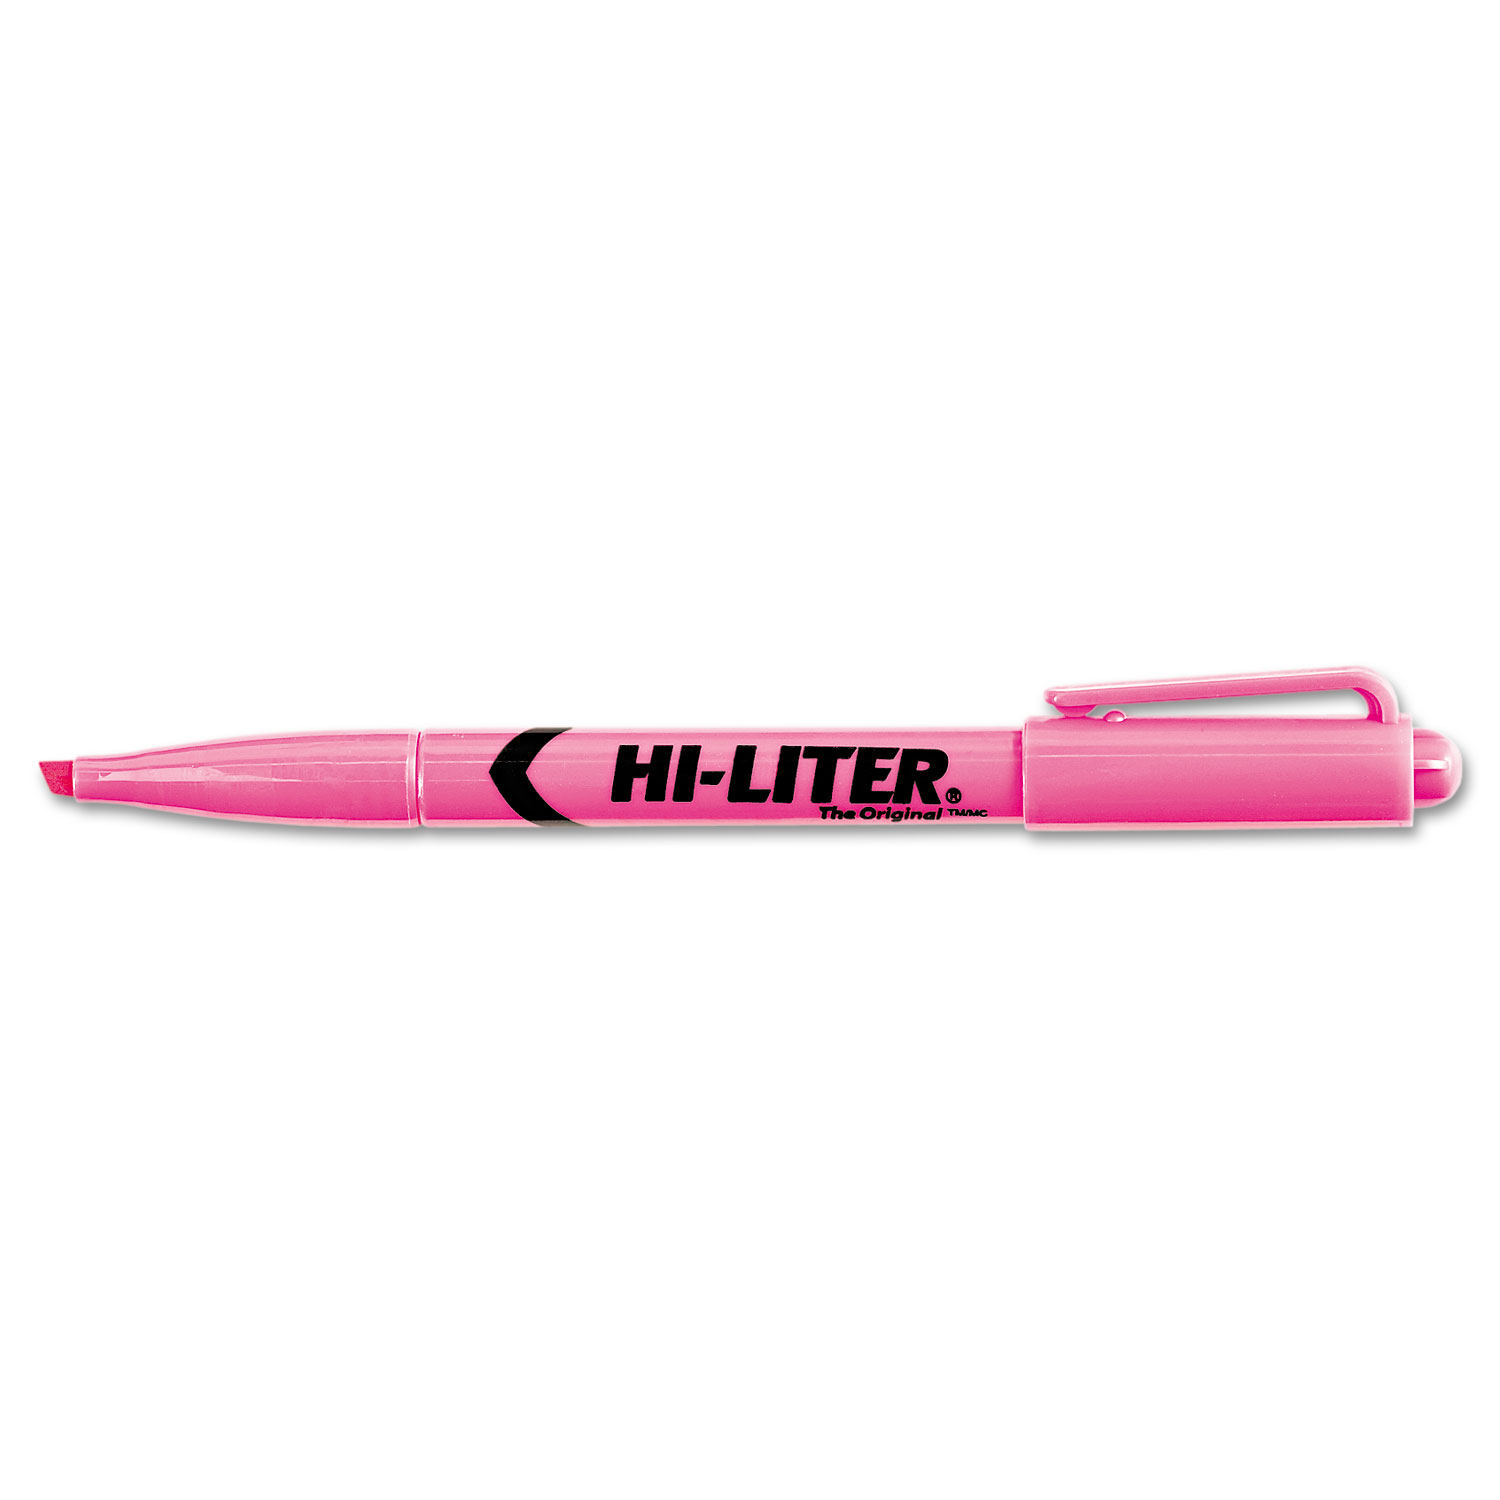 HI-LITER Pen-Style Highlighter, Chisel Tip, Fluorescent Pink Ink, Dozen